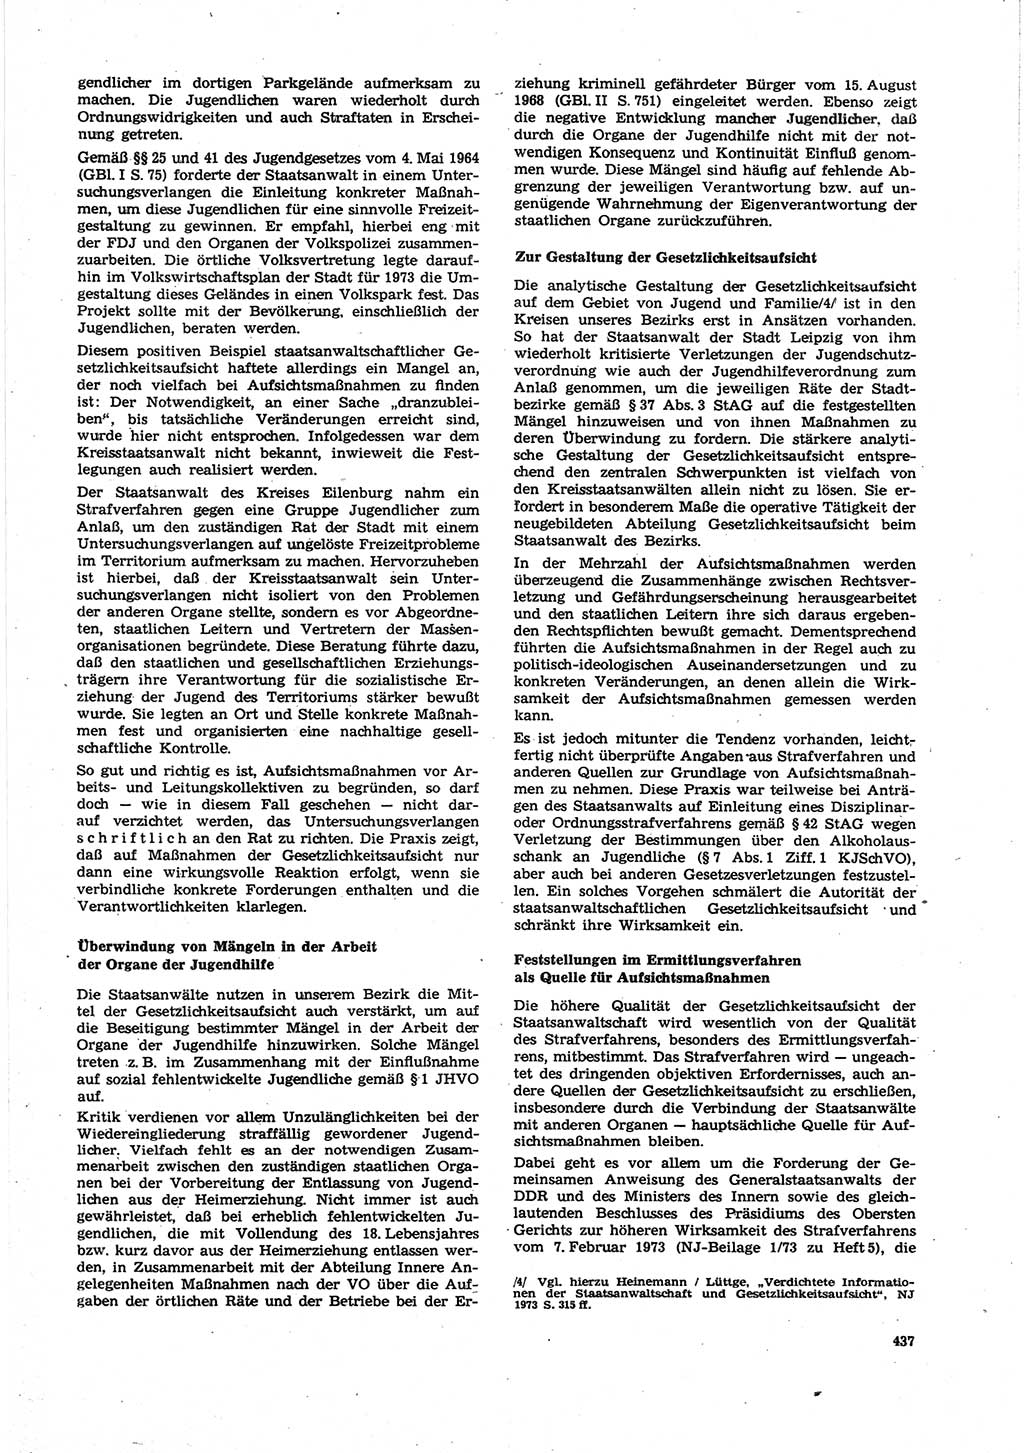 Neue Justiz (NJ), Zeitschrift für Recht und Rechtswissenschaft [Deutsche Demokratische Republik (DDR)], 27. Jahrgang 1973, Seite 437 (NJ DDR 1973, S. 437)